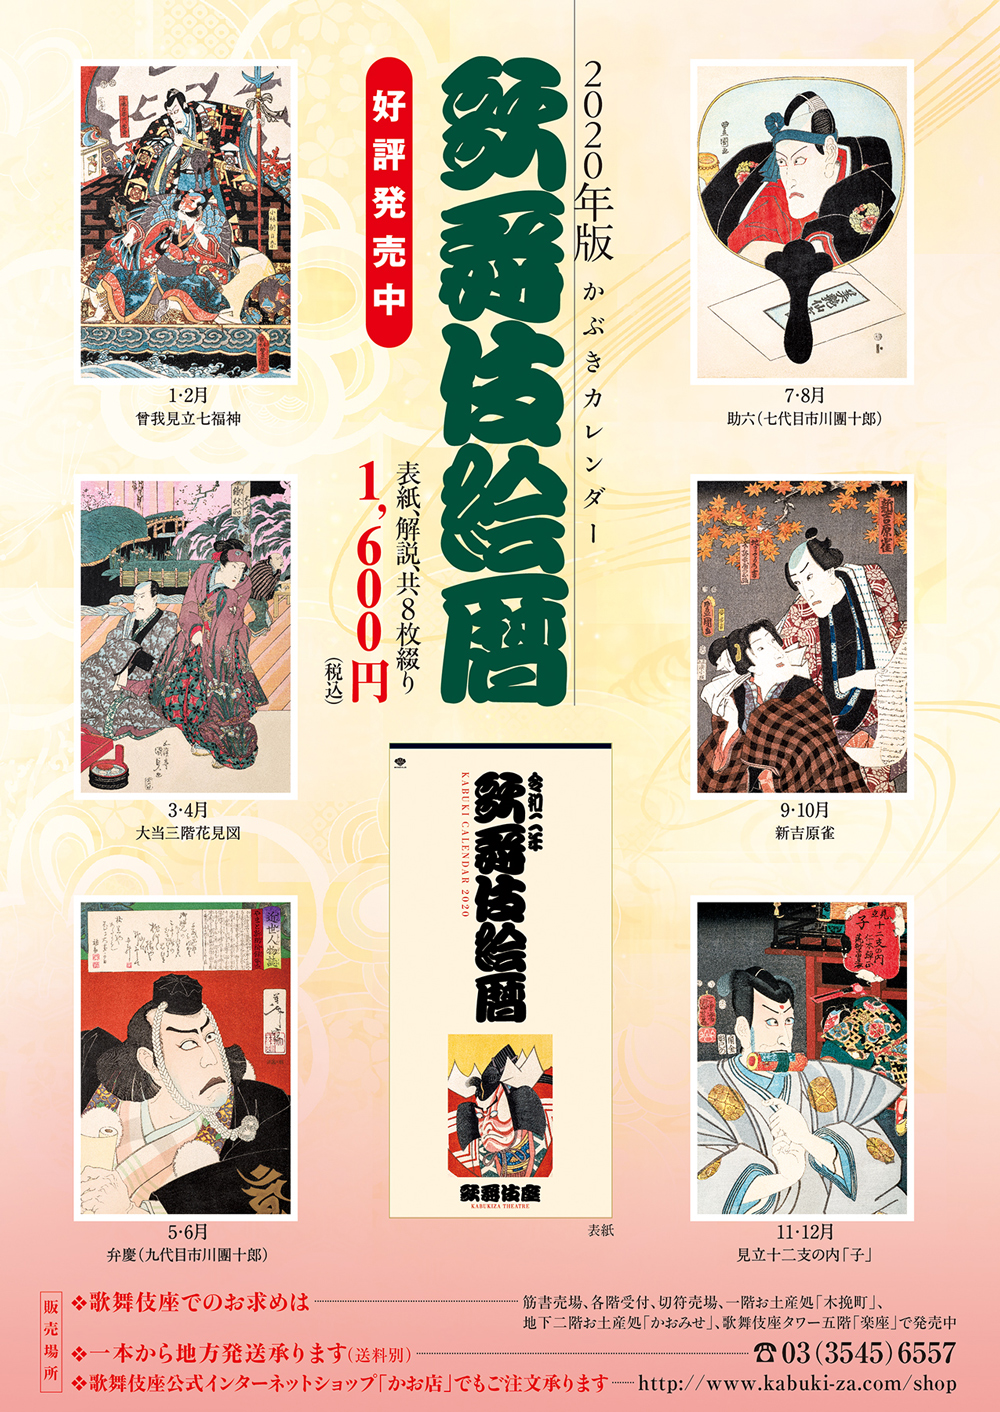 2020年版かぶきカレンダー「歌舞伎絵暦」発売